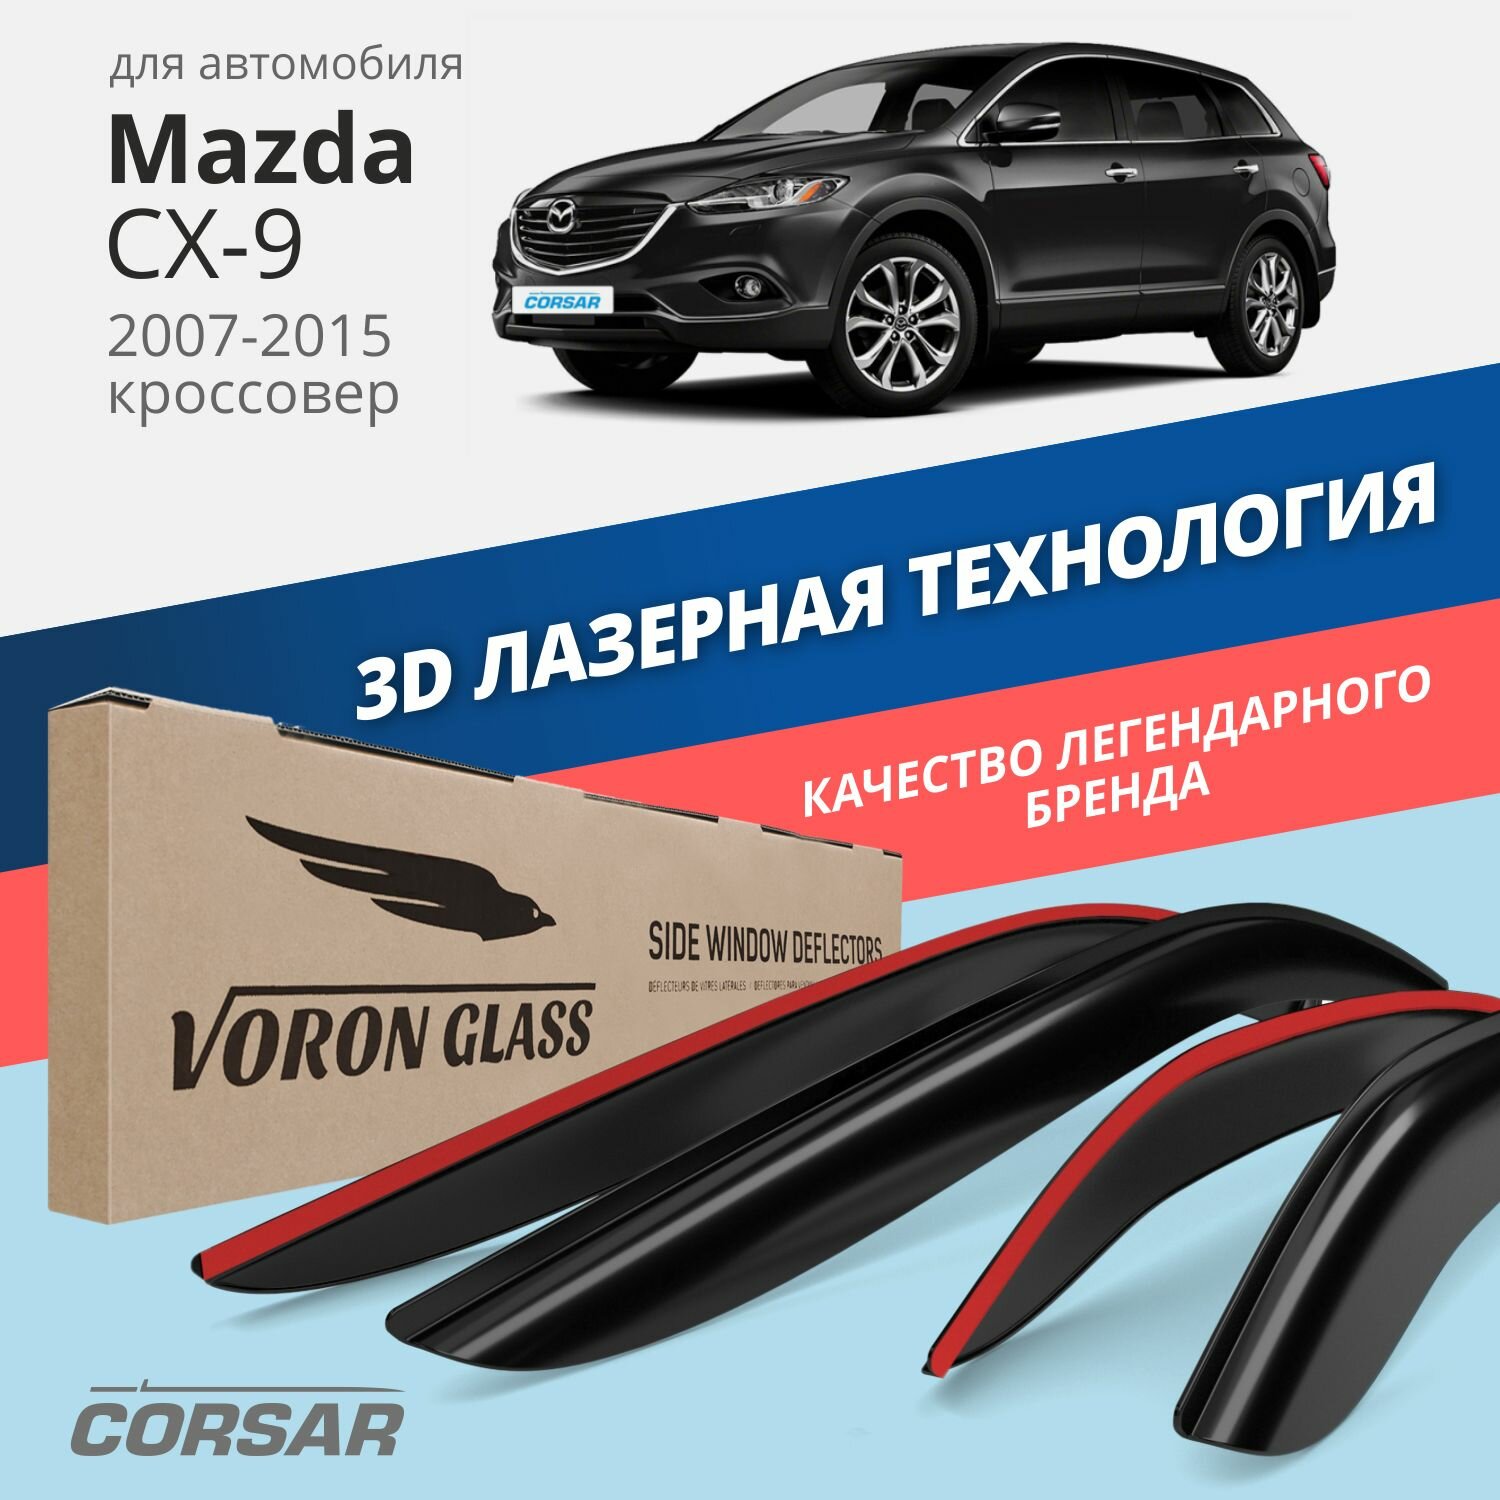 Дефлекторы окон Voron Glass серия Corsar для Mazda CX-9 2007-2015 накладные 4 шт.